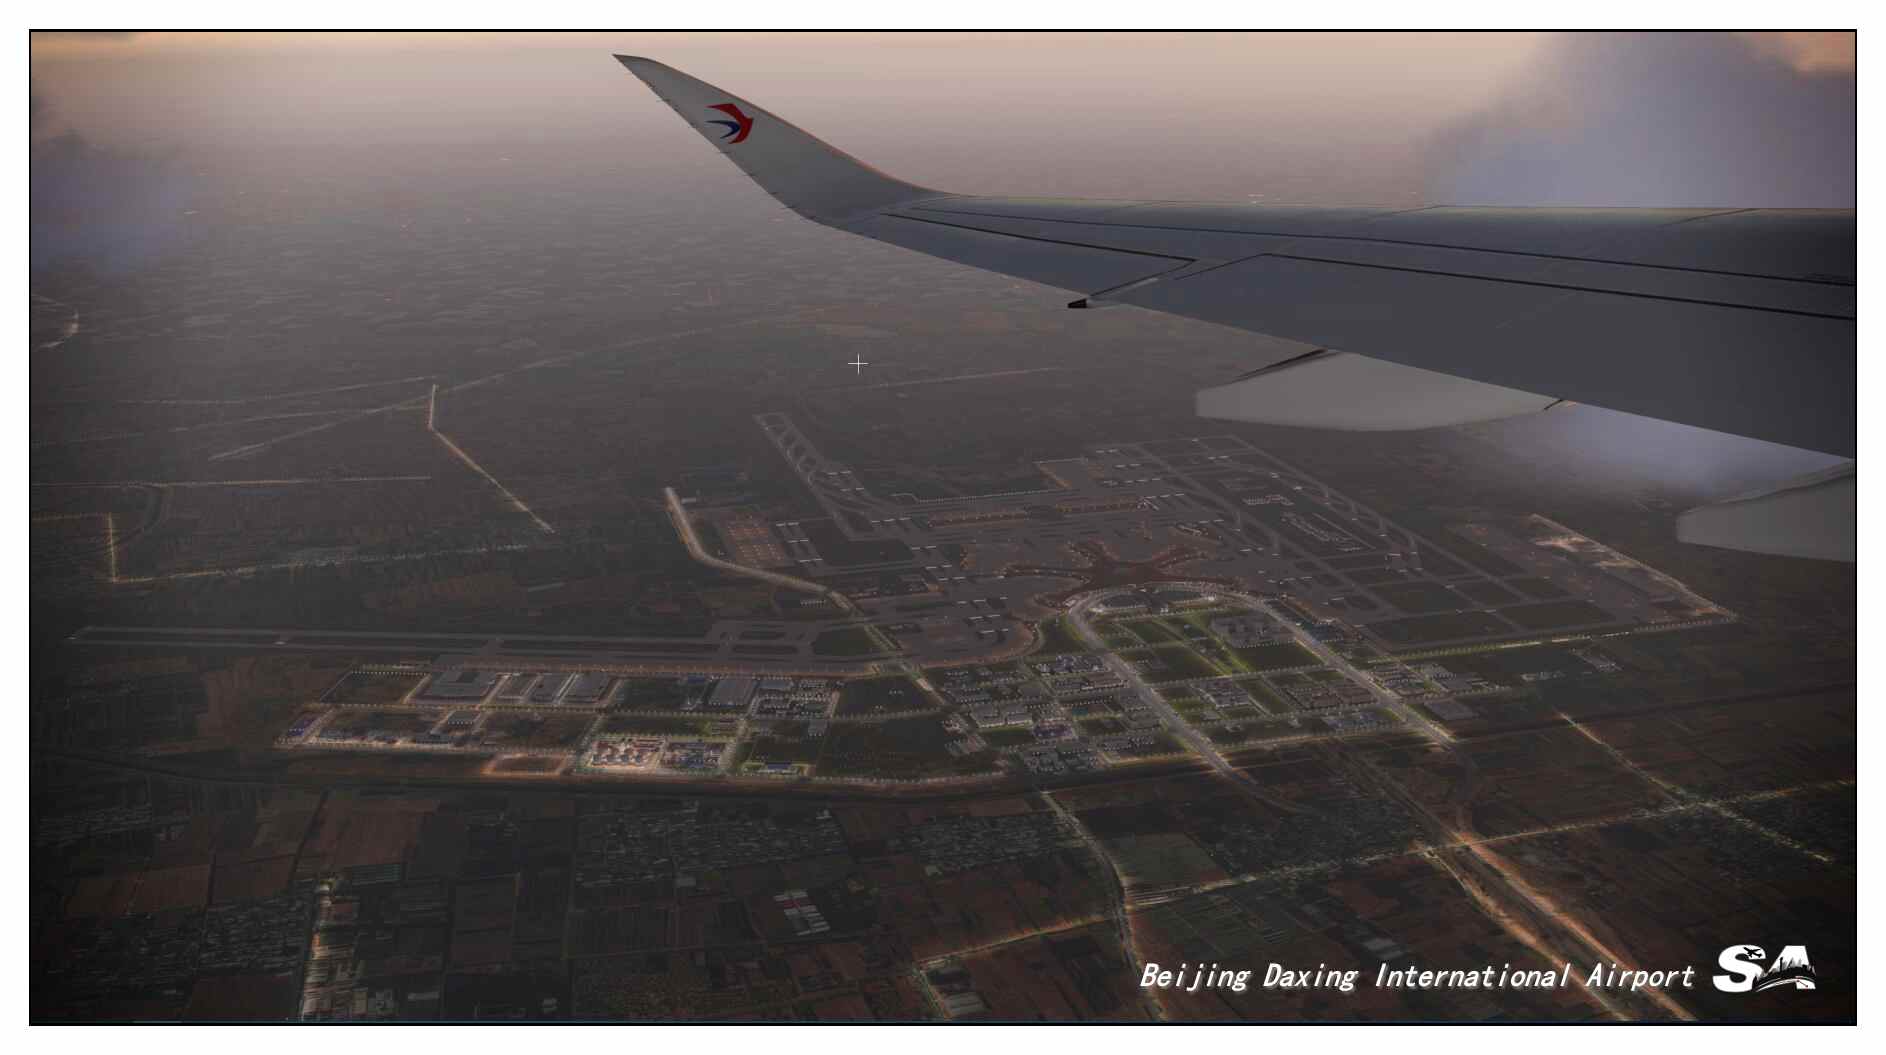 【X-Plane】ZBAD北京大兴国际机场-正式发布-1776 